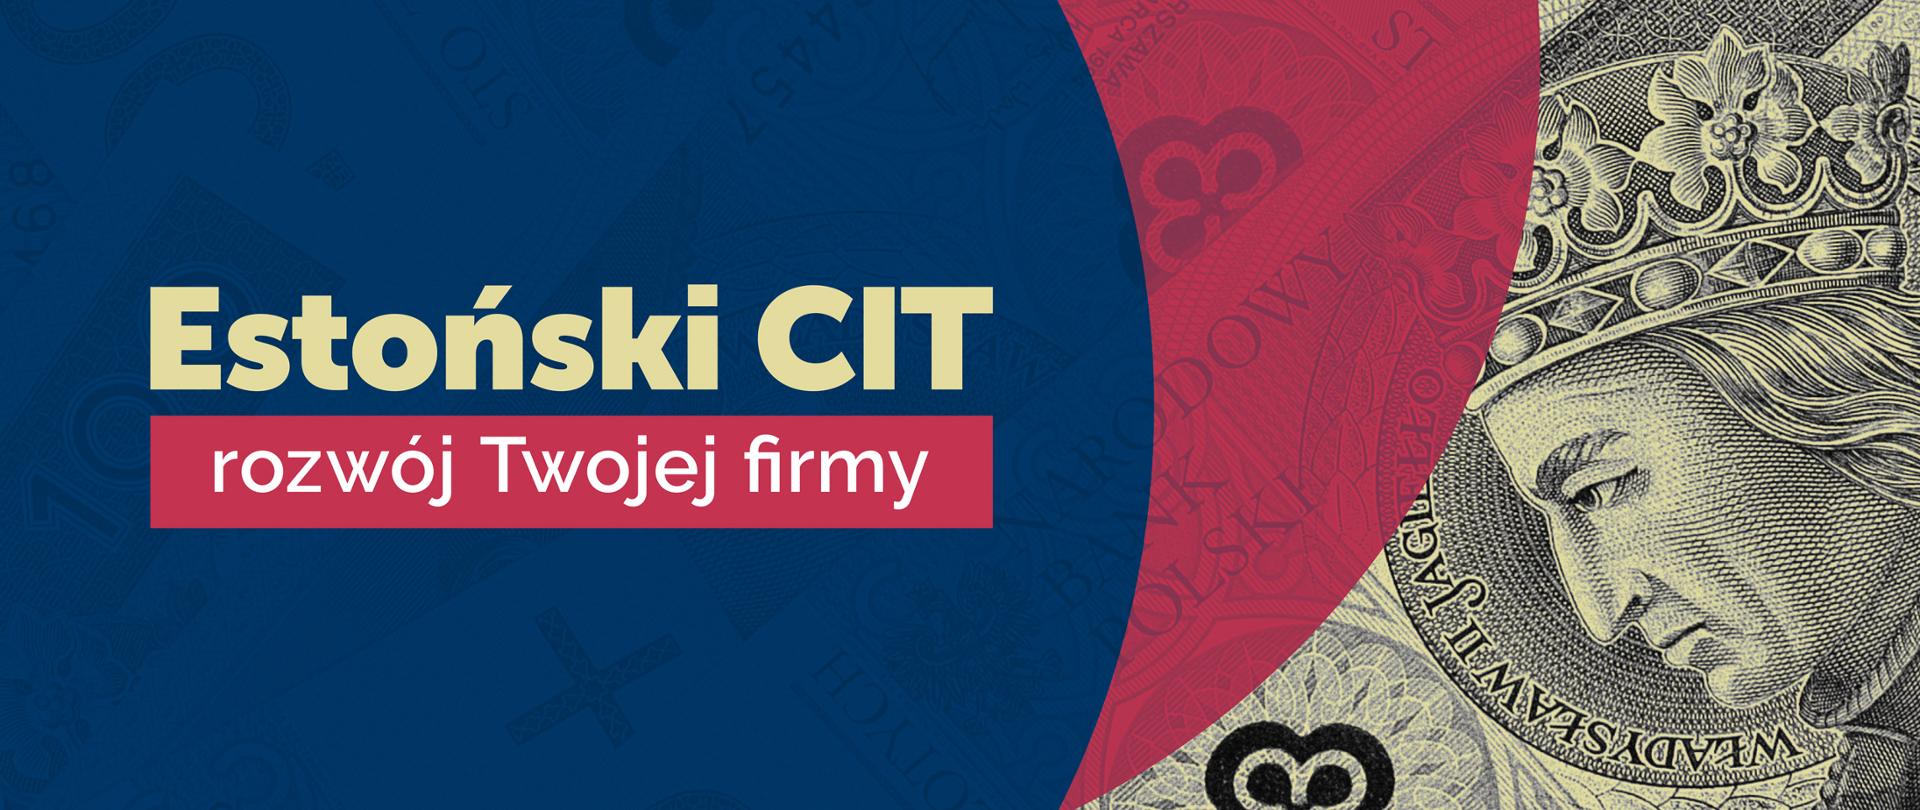 Estoński CIT - zmiany po konsultacjach z biznesem - Fragment banknotu oraz napis Estoński CIT, rozwój Twojej firmy.